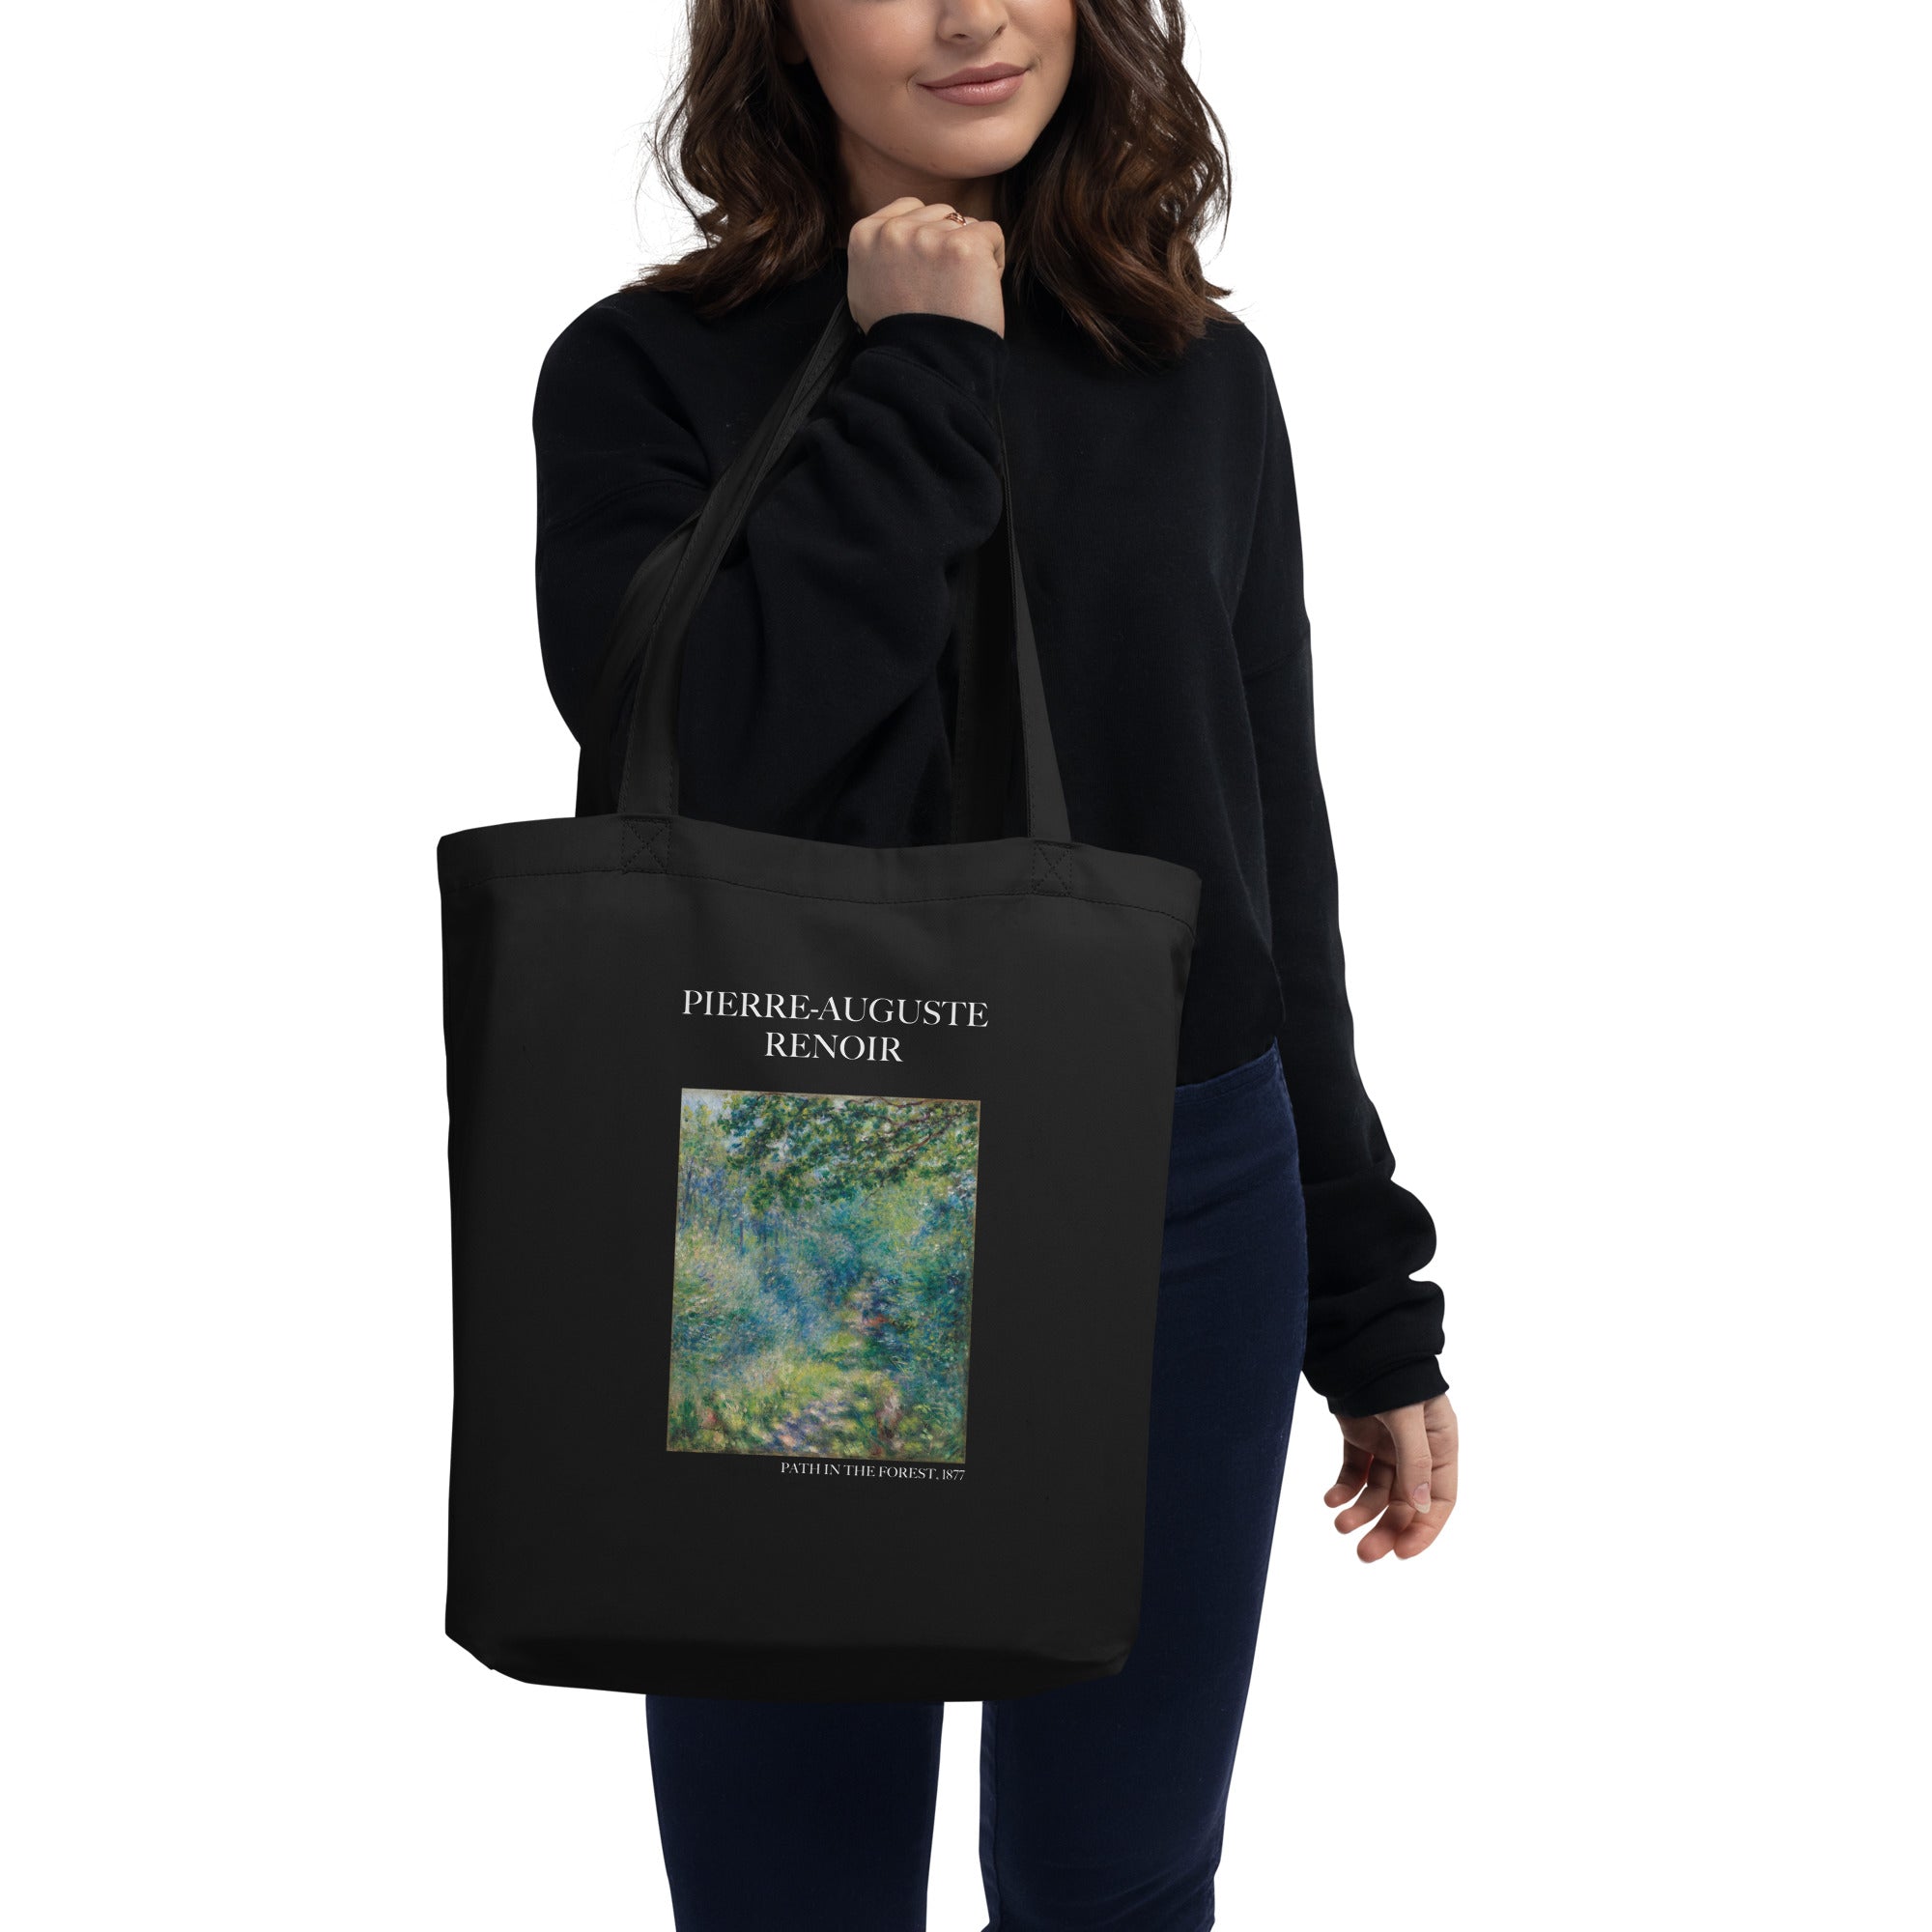 Pierre-Auguste Renoir 'Weg im Wald' berühmtes Gemälde Tragetasche | Umweltfreundliche Kunst Tragetasche